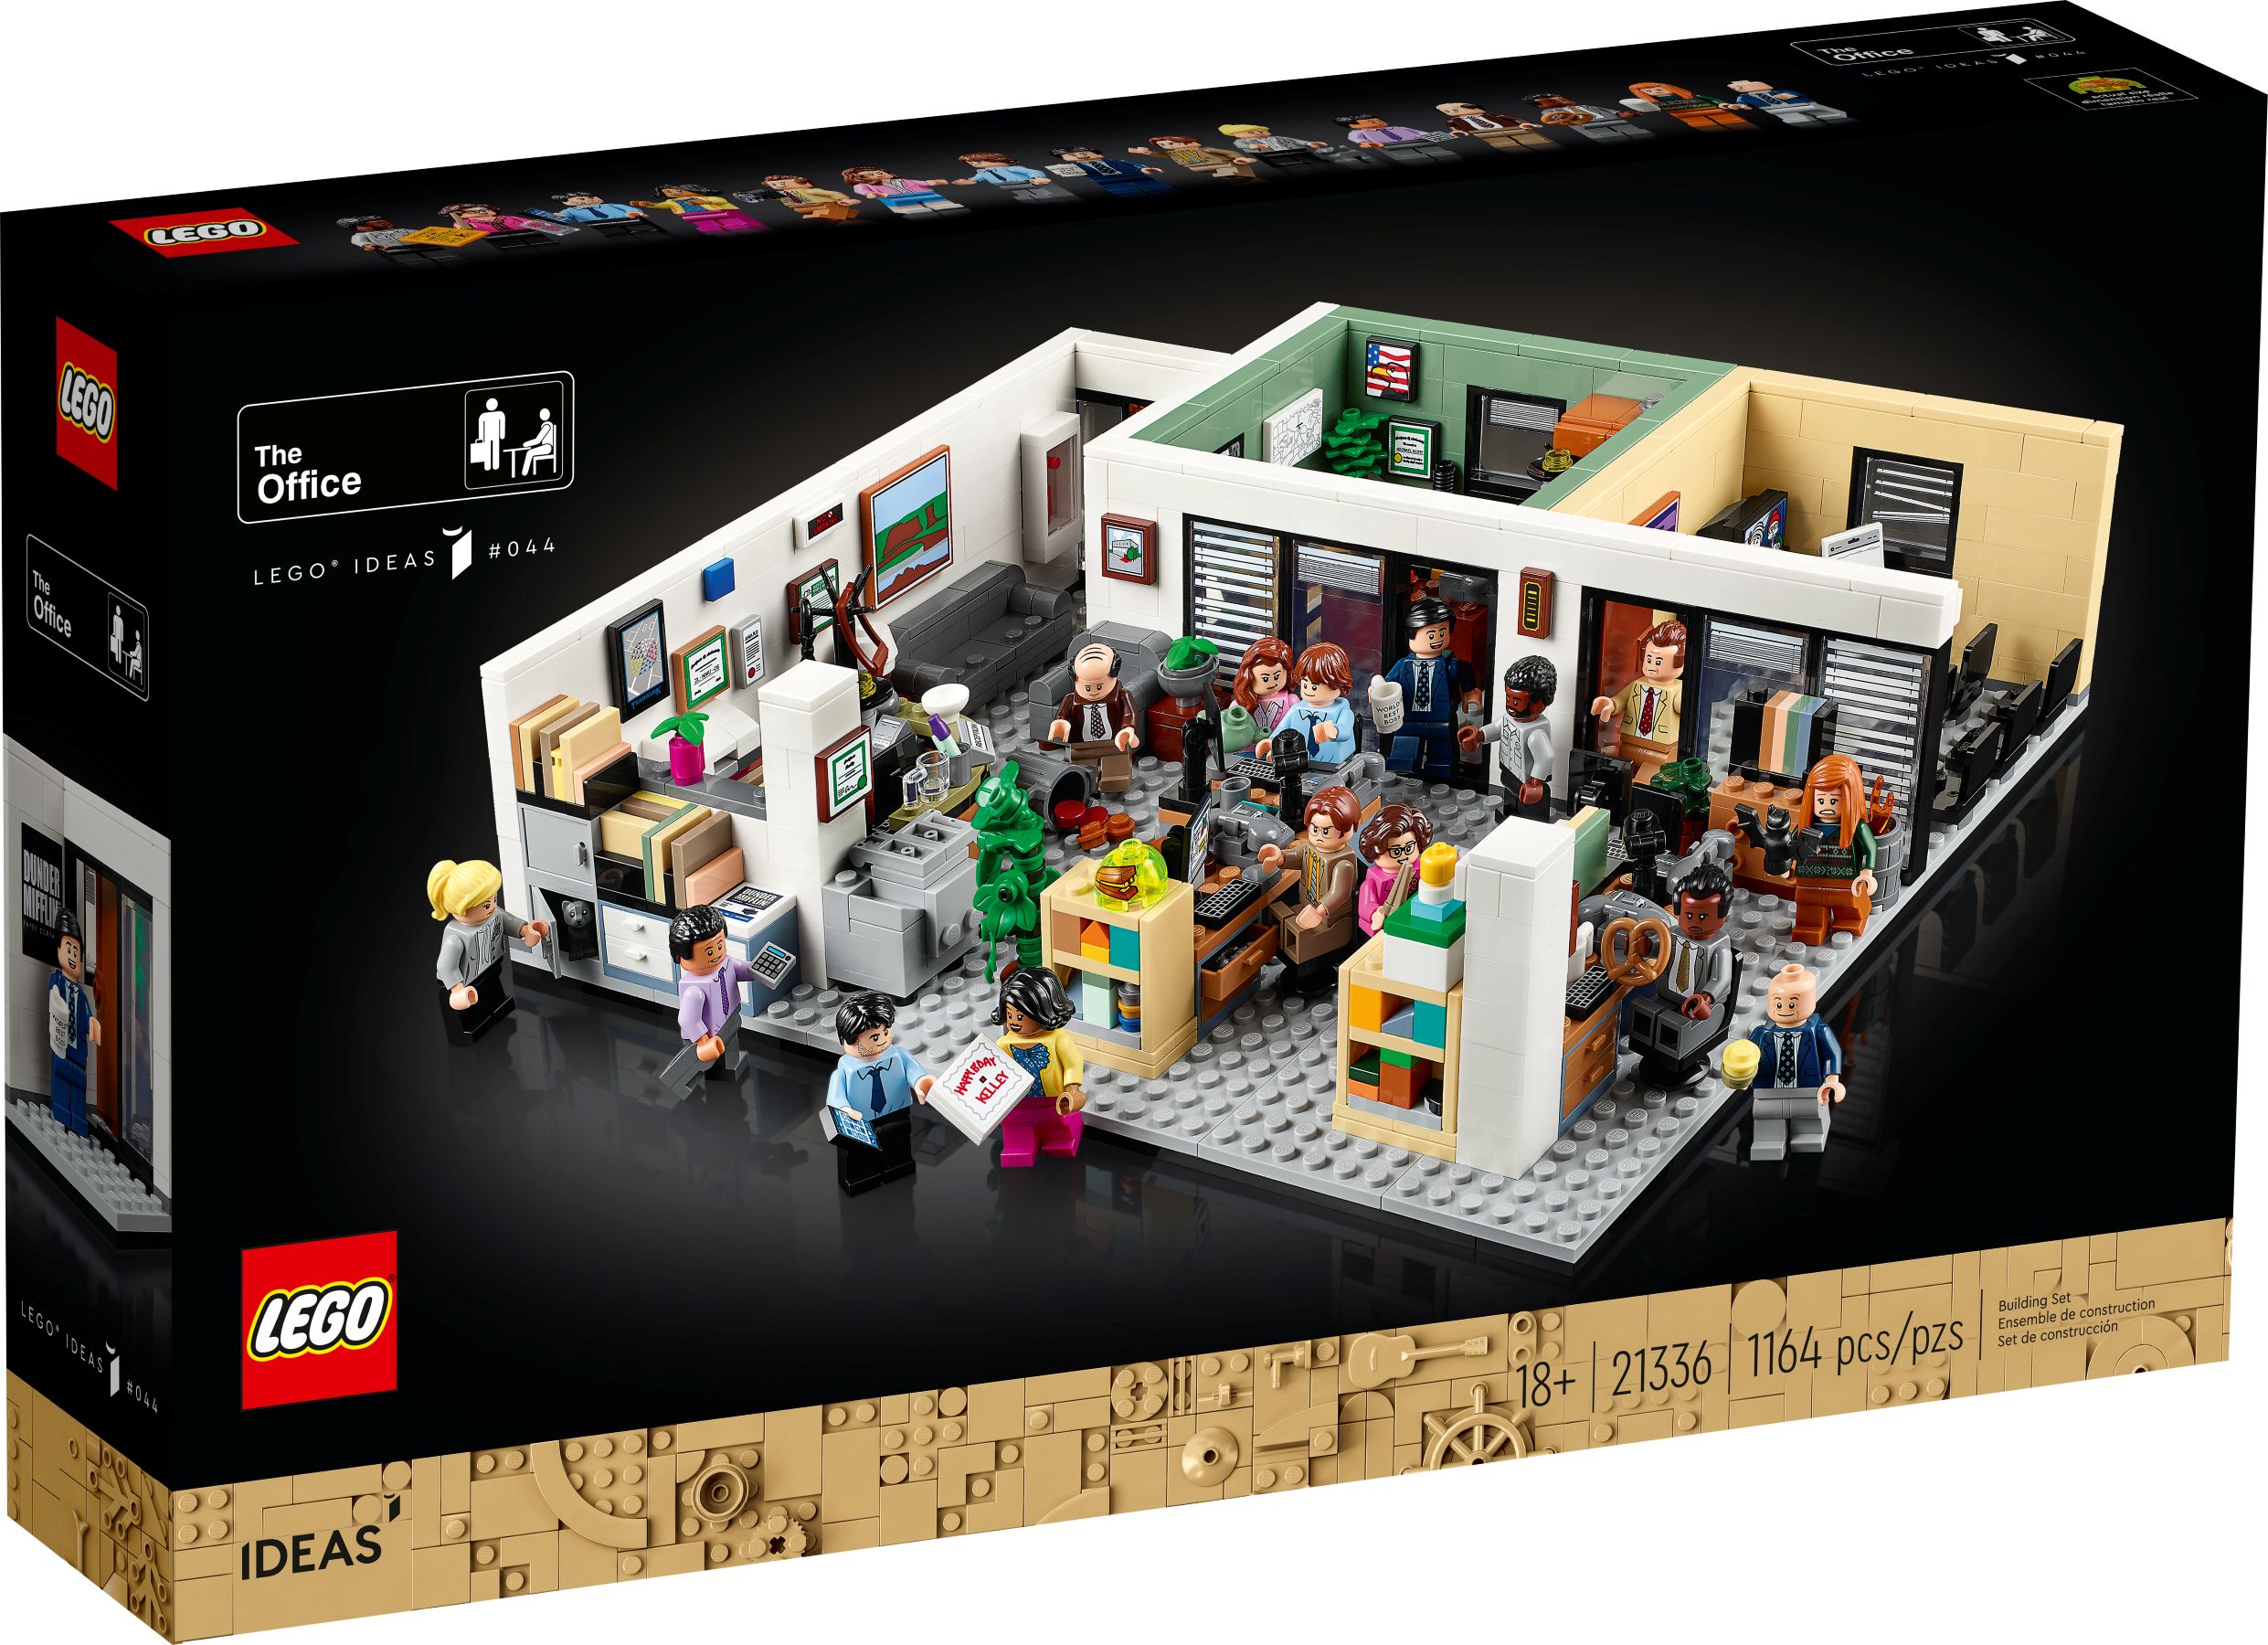 LEGO Ideas 21336 The Office LEGO_21336_alt1.jpg